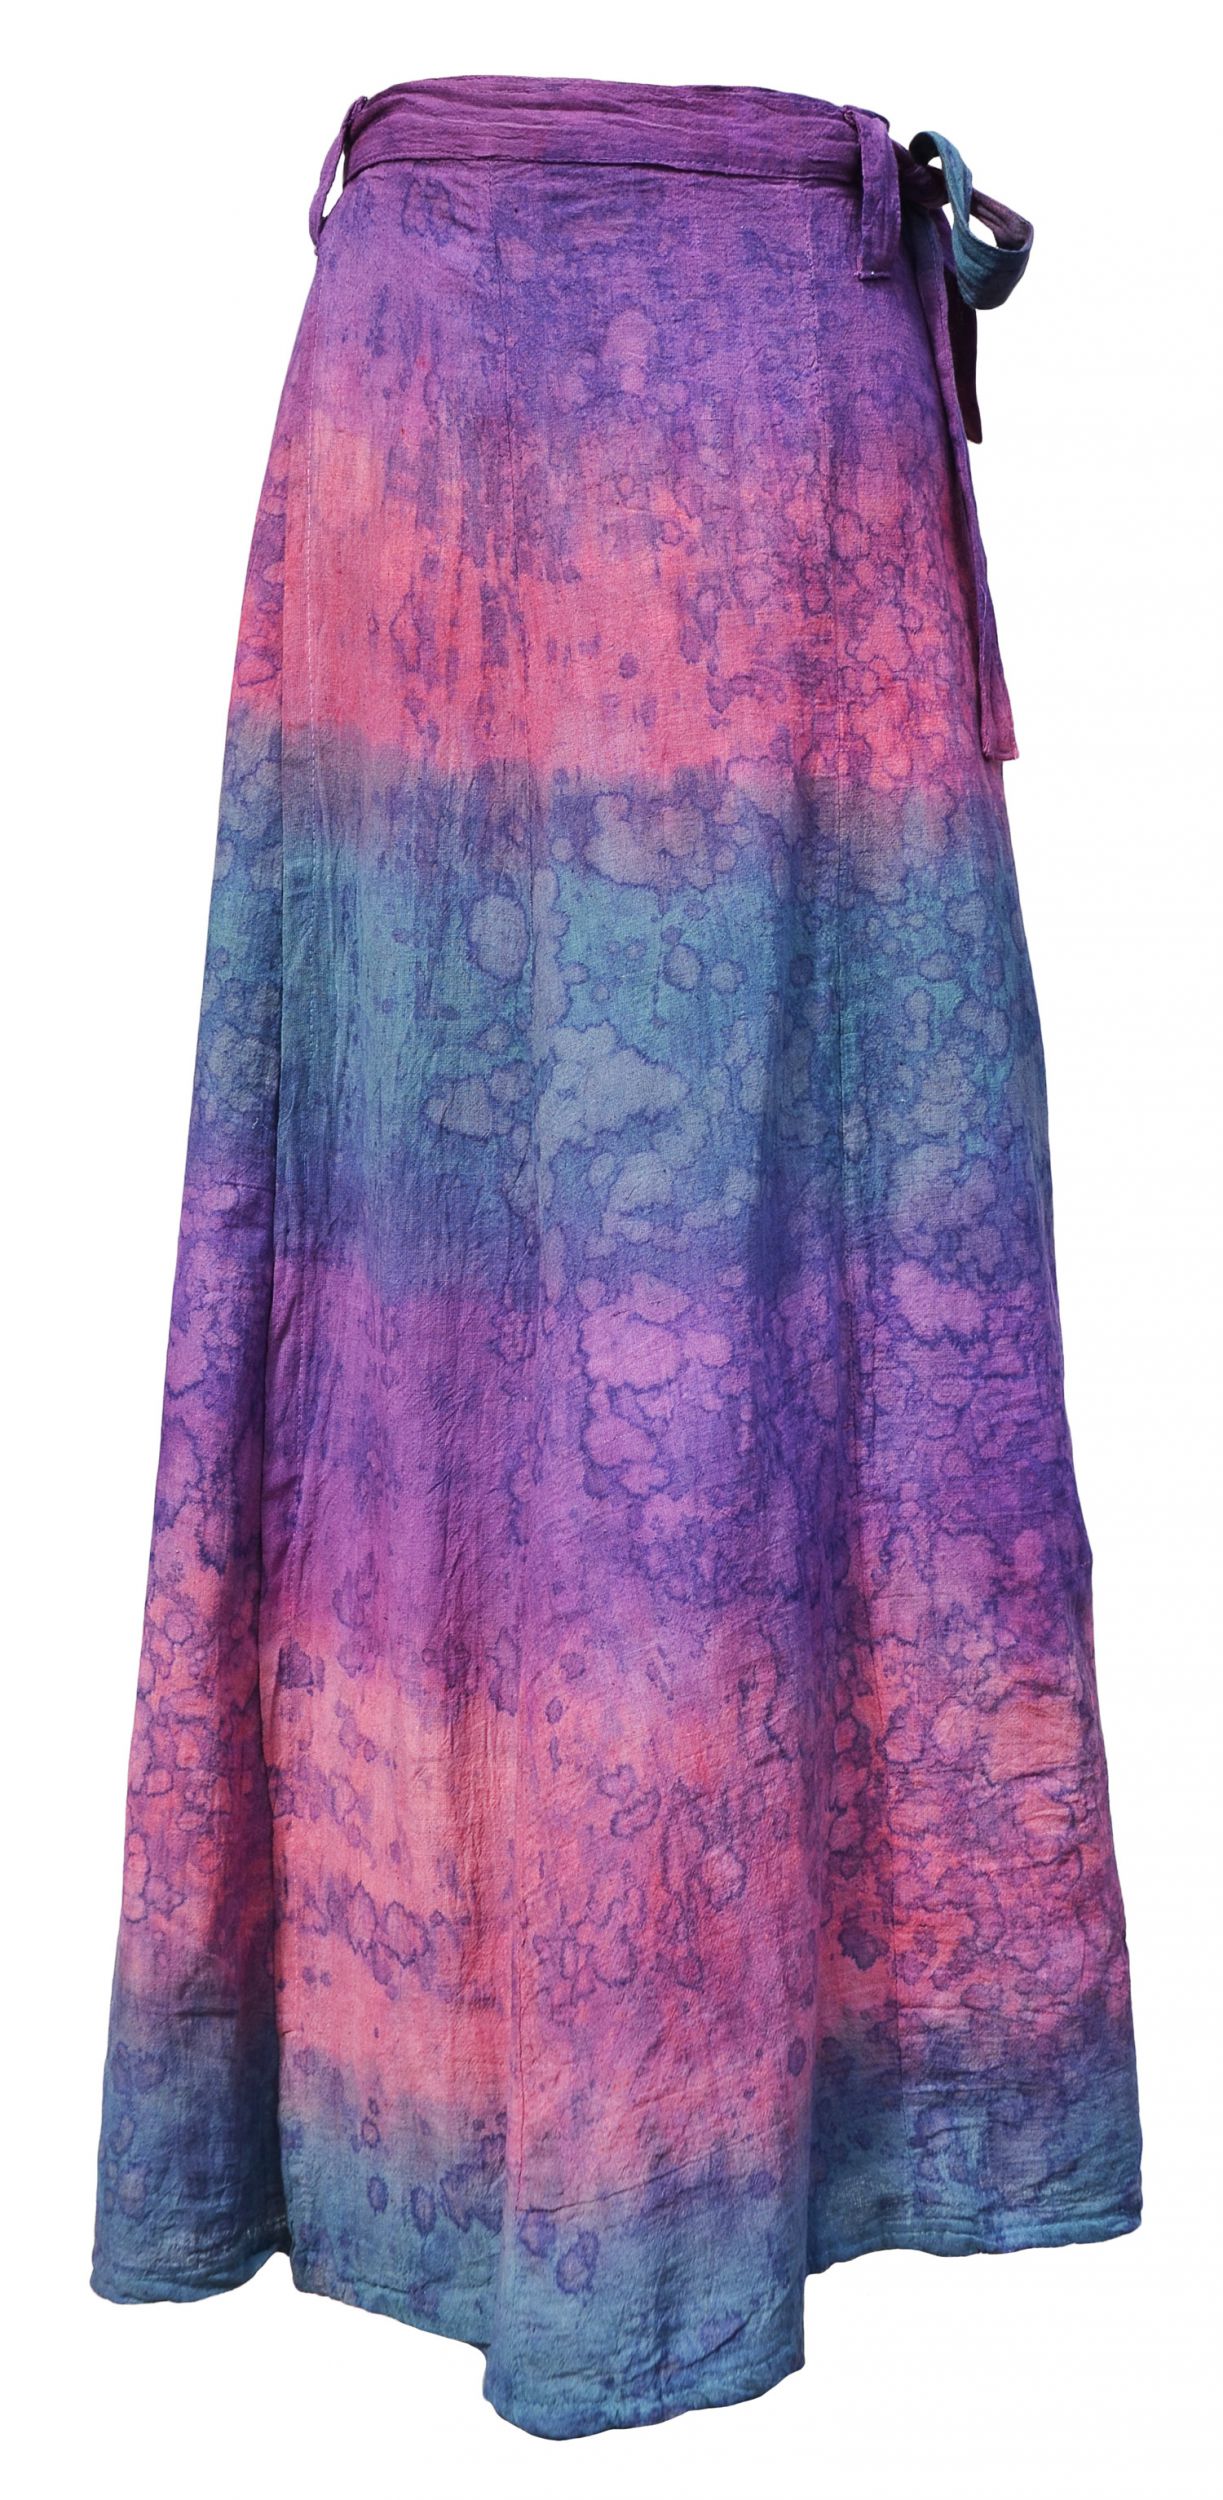 Wrapover - batik - skirt - purple/pink bubble | Black Yak